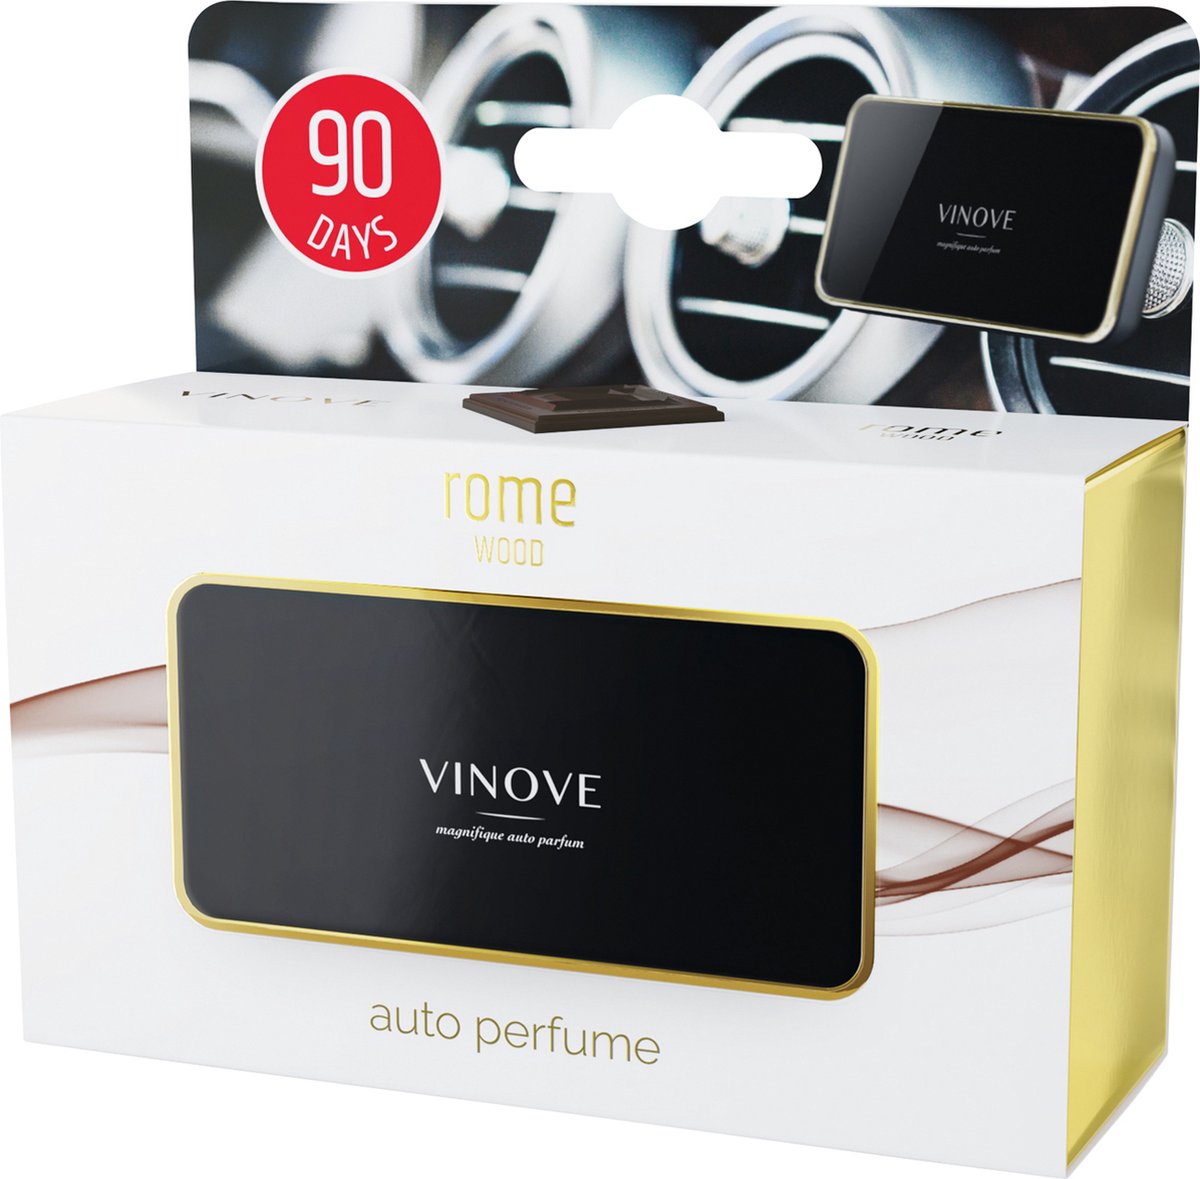 Vinove – Autoparfum – Car Airfreshner – Luxe Rome - Luxury